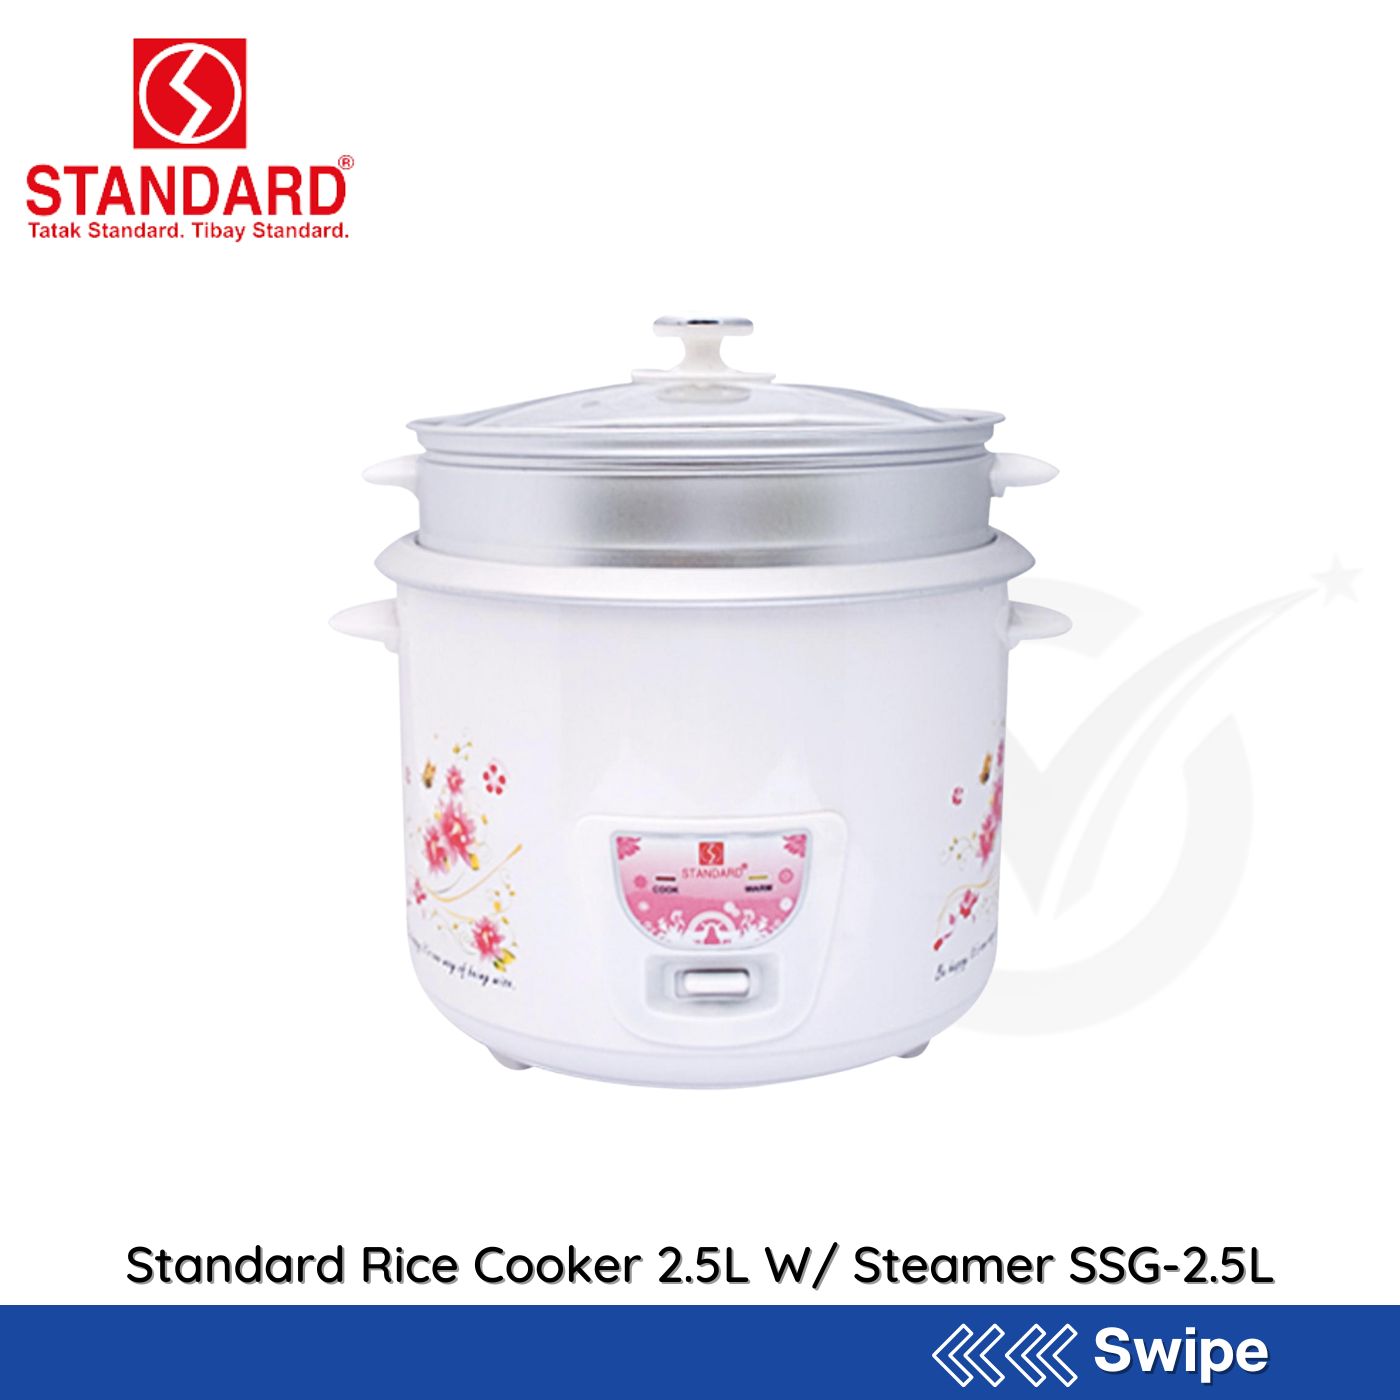 Standard Rice Cooker 2.5L W/ Steamer SSG-2.5L